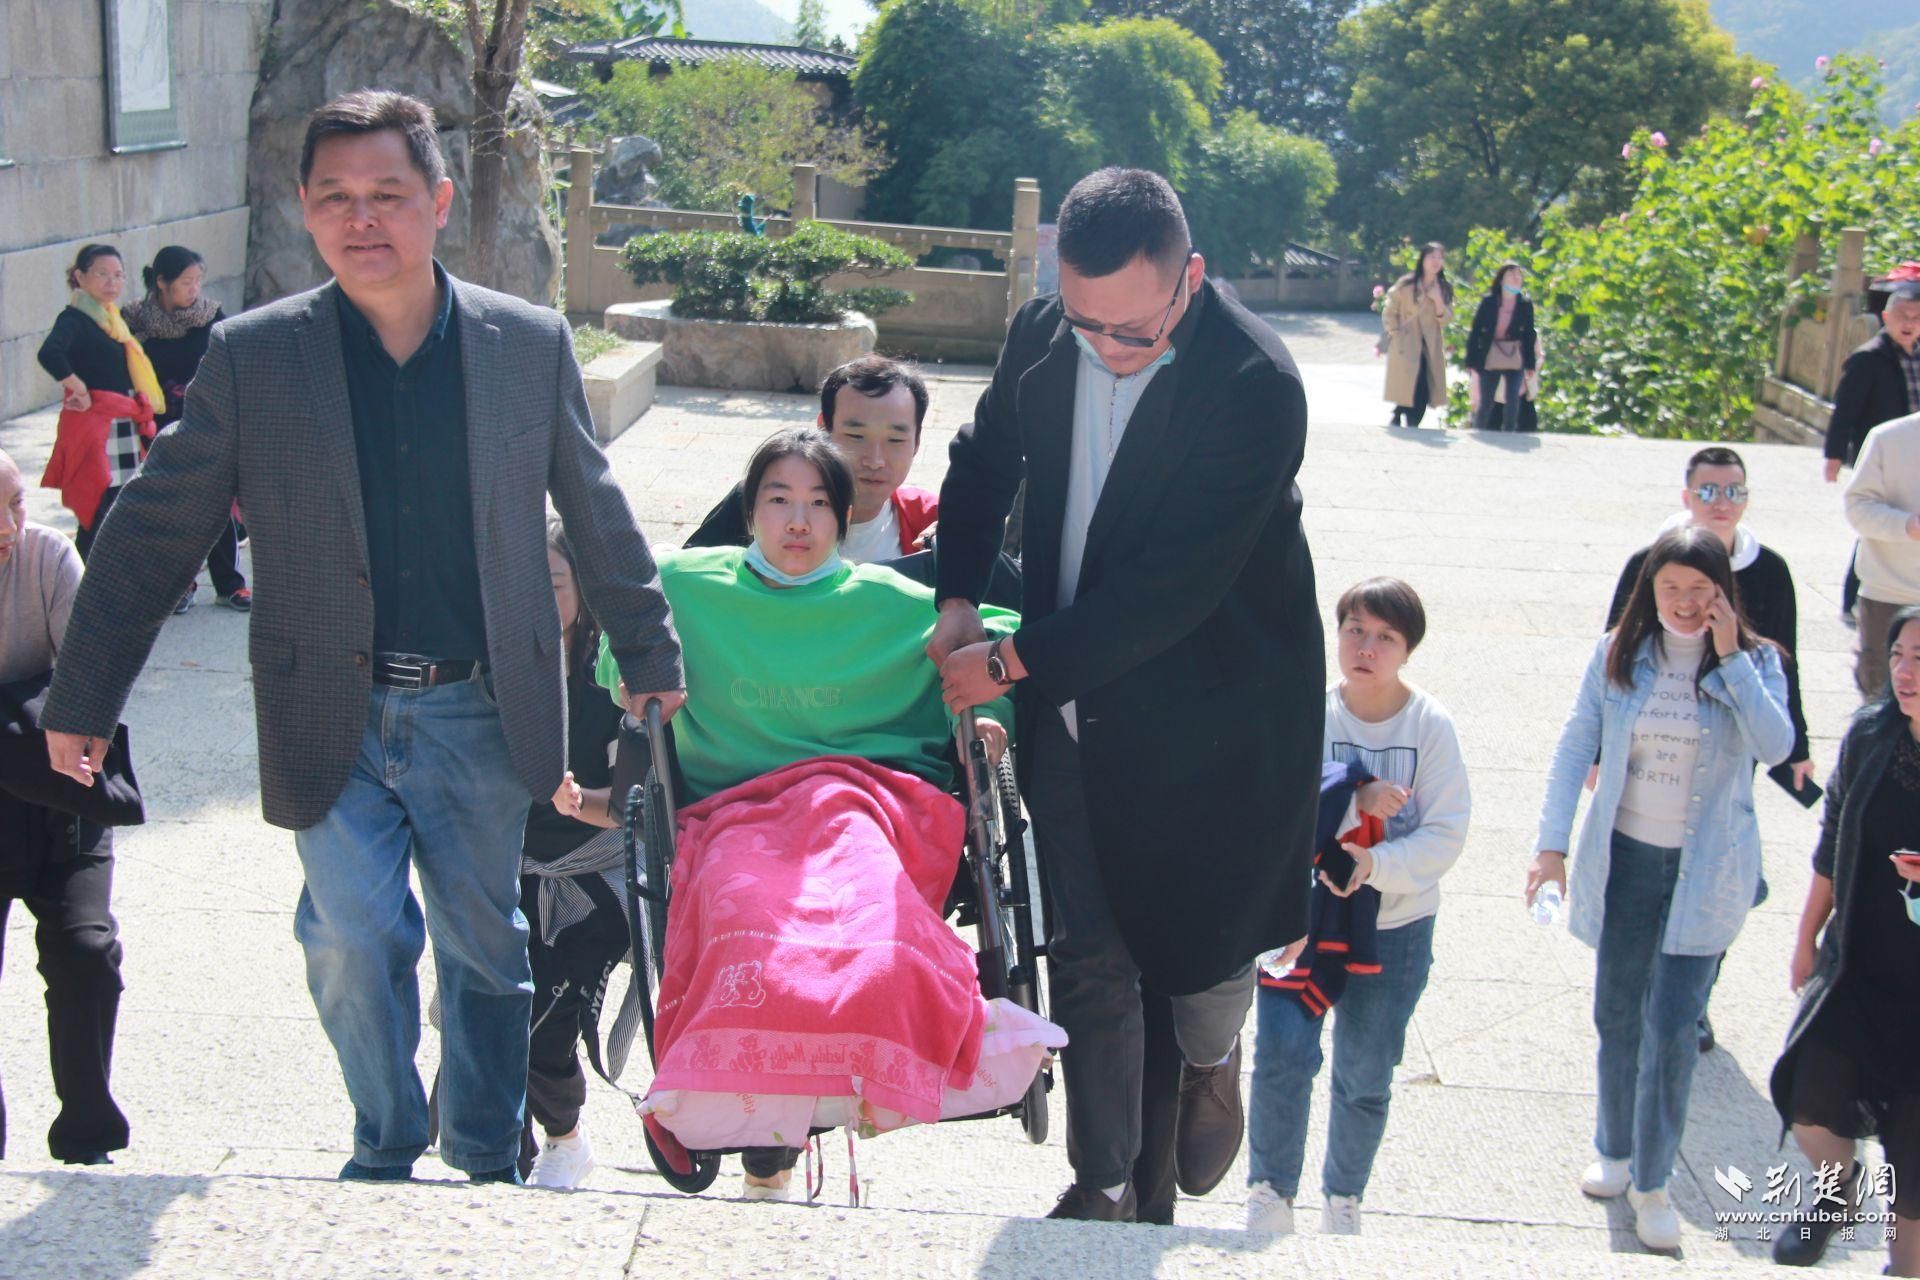 兴山县残联开展残疾人旅游体验活动 43名残疾人感受家乡新变化